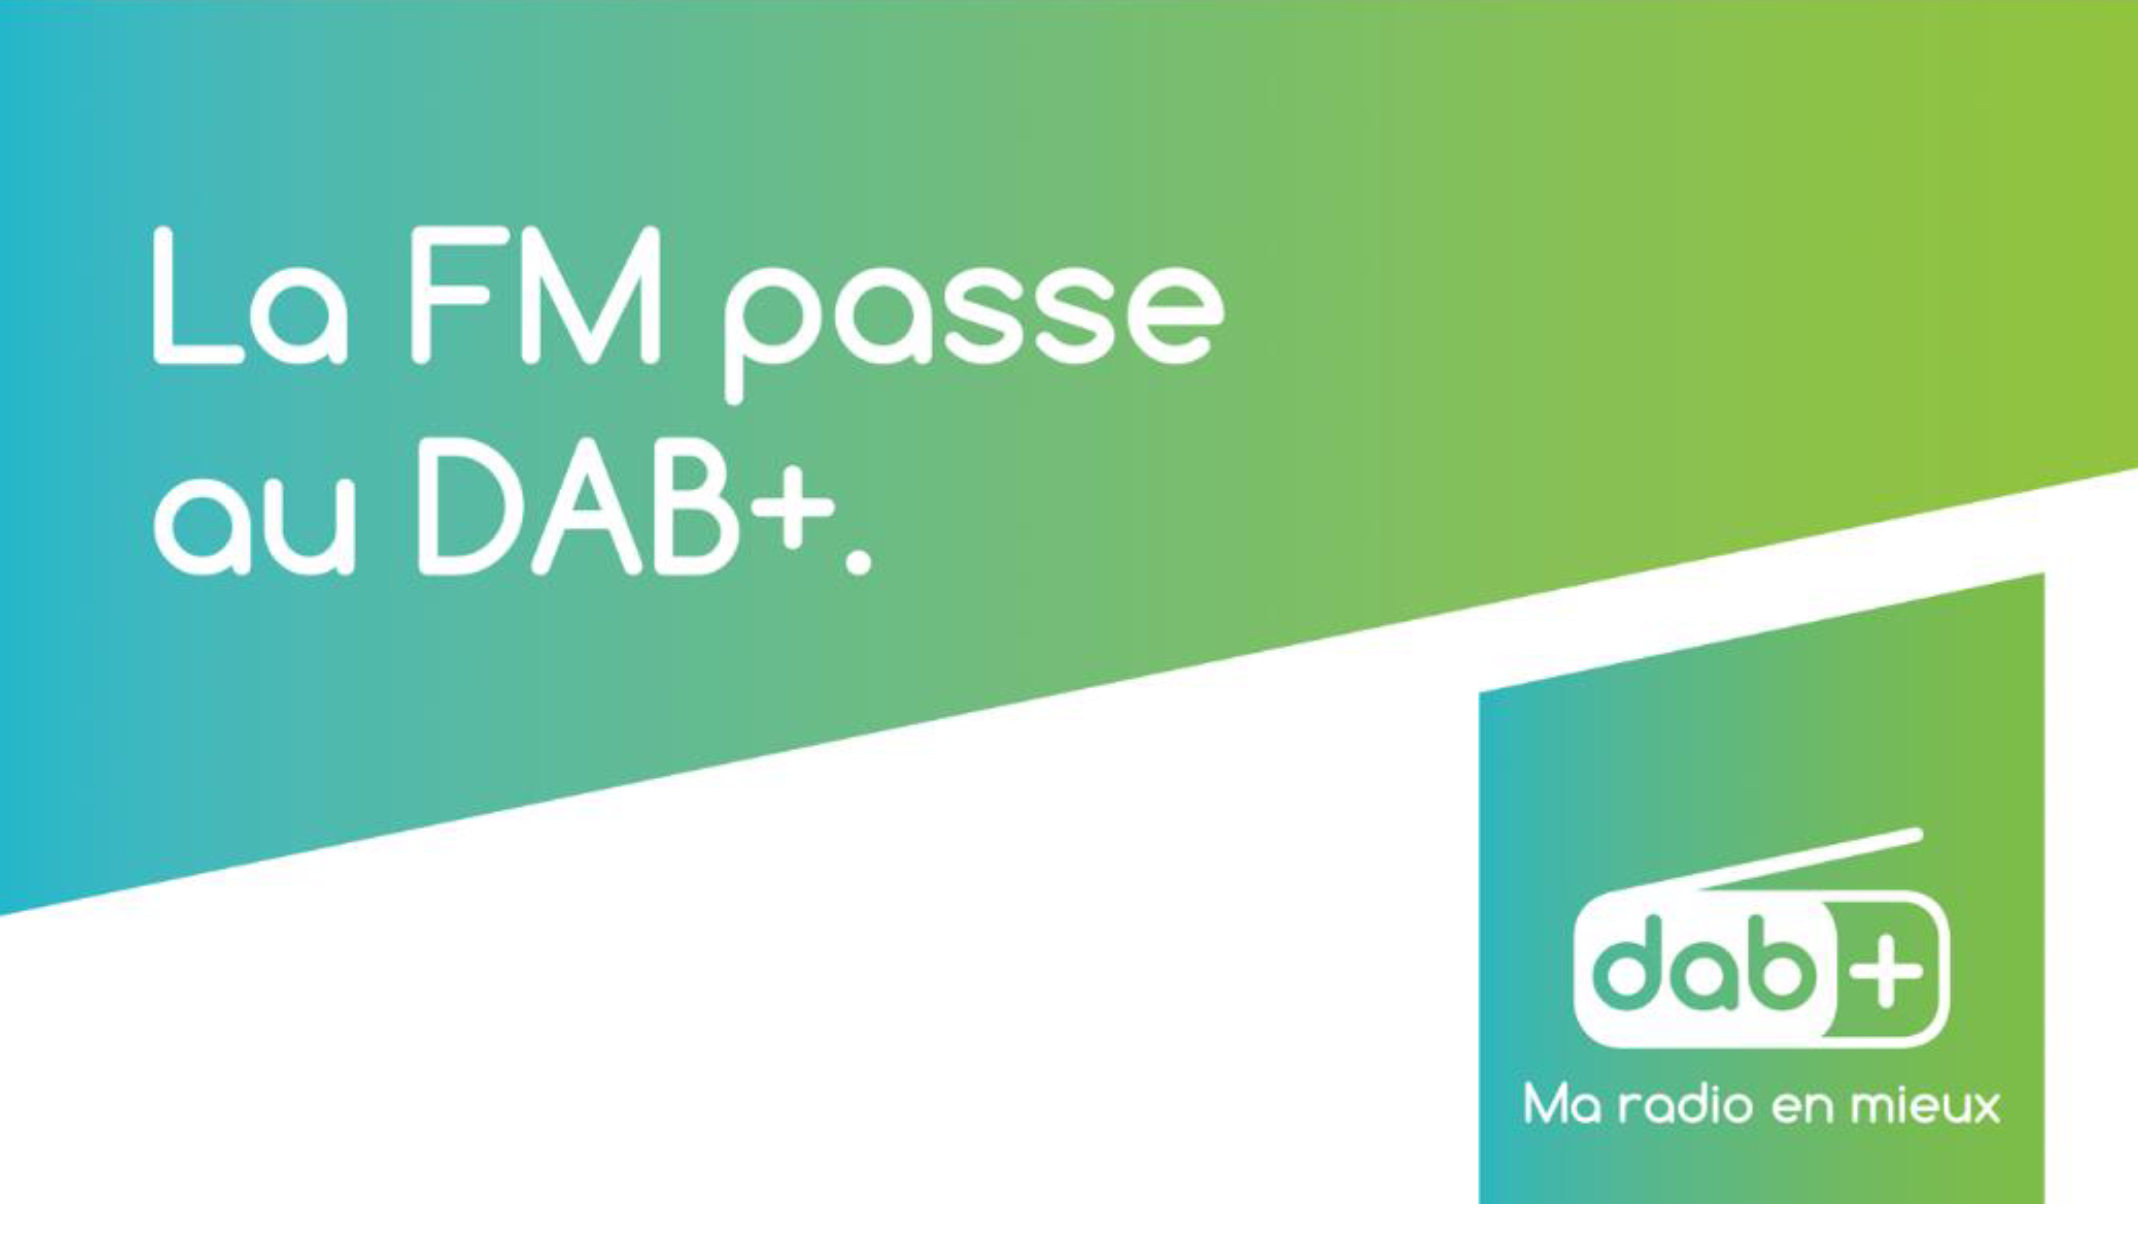 Les "headline" et "baseline" retenus pour les campagnes de promotion du DAB+ en Belgique